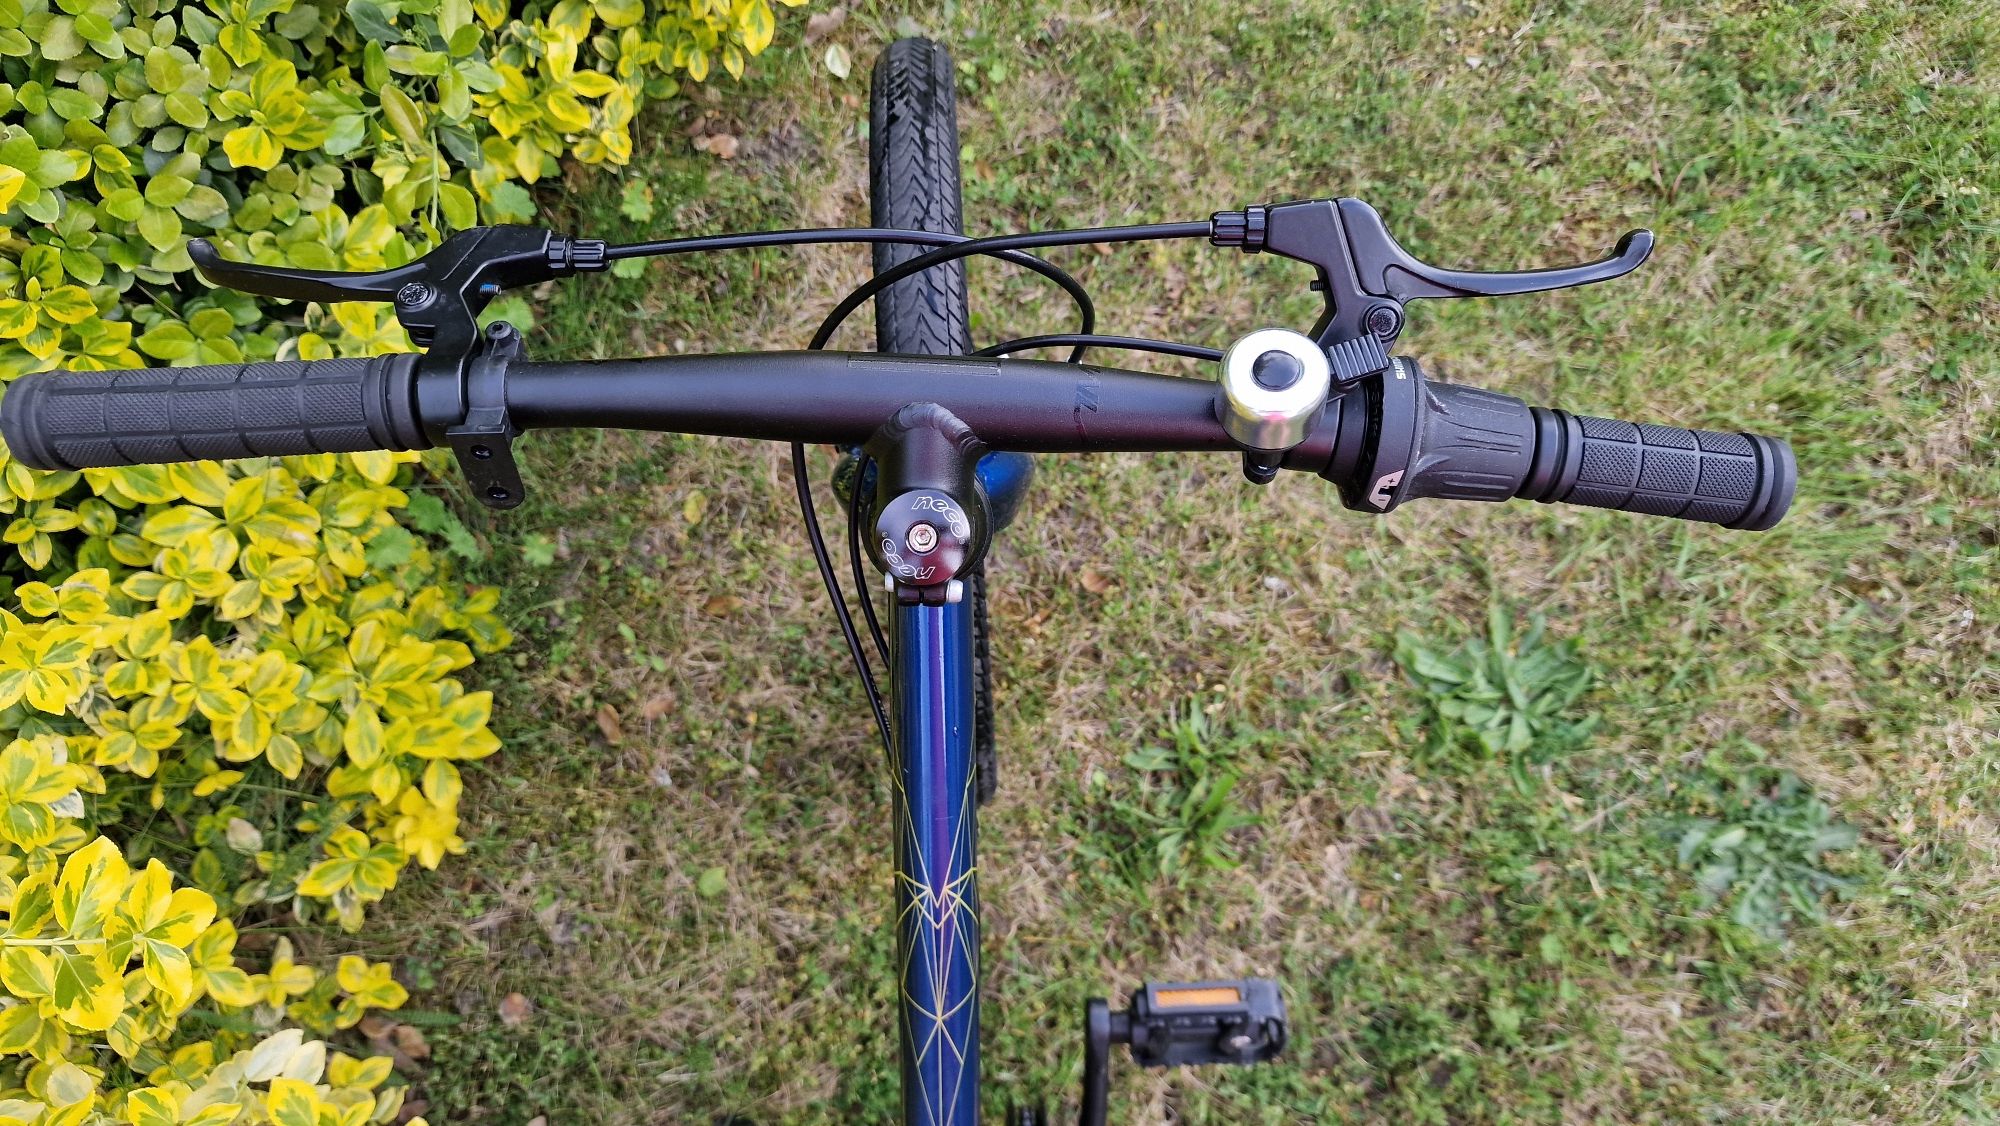 Rower Amulet Tomcat 20 lekki rower jak woom niebieski dla chłopca